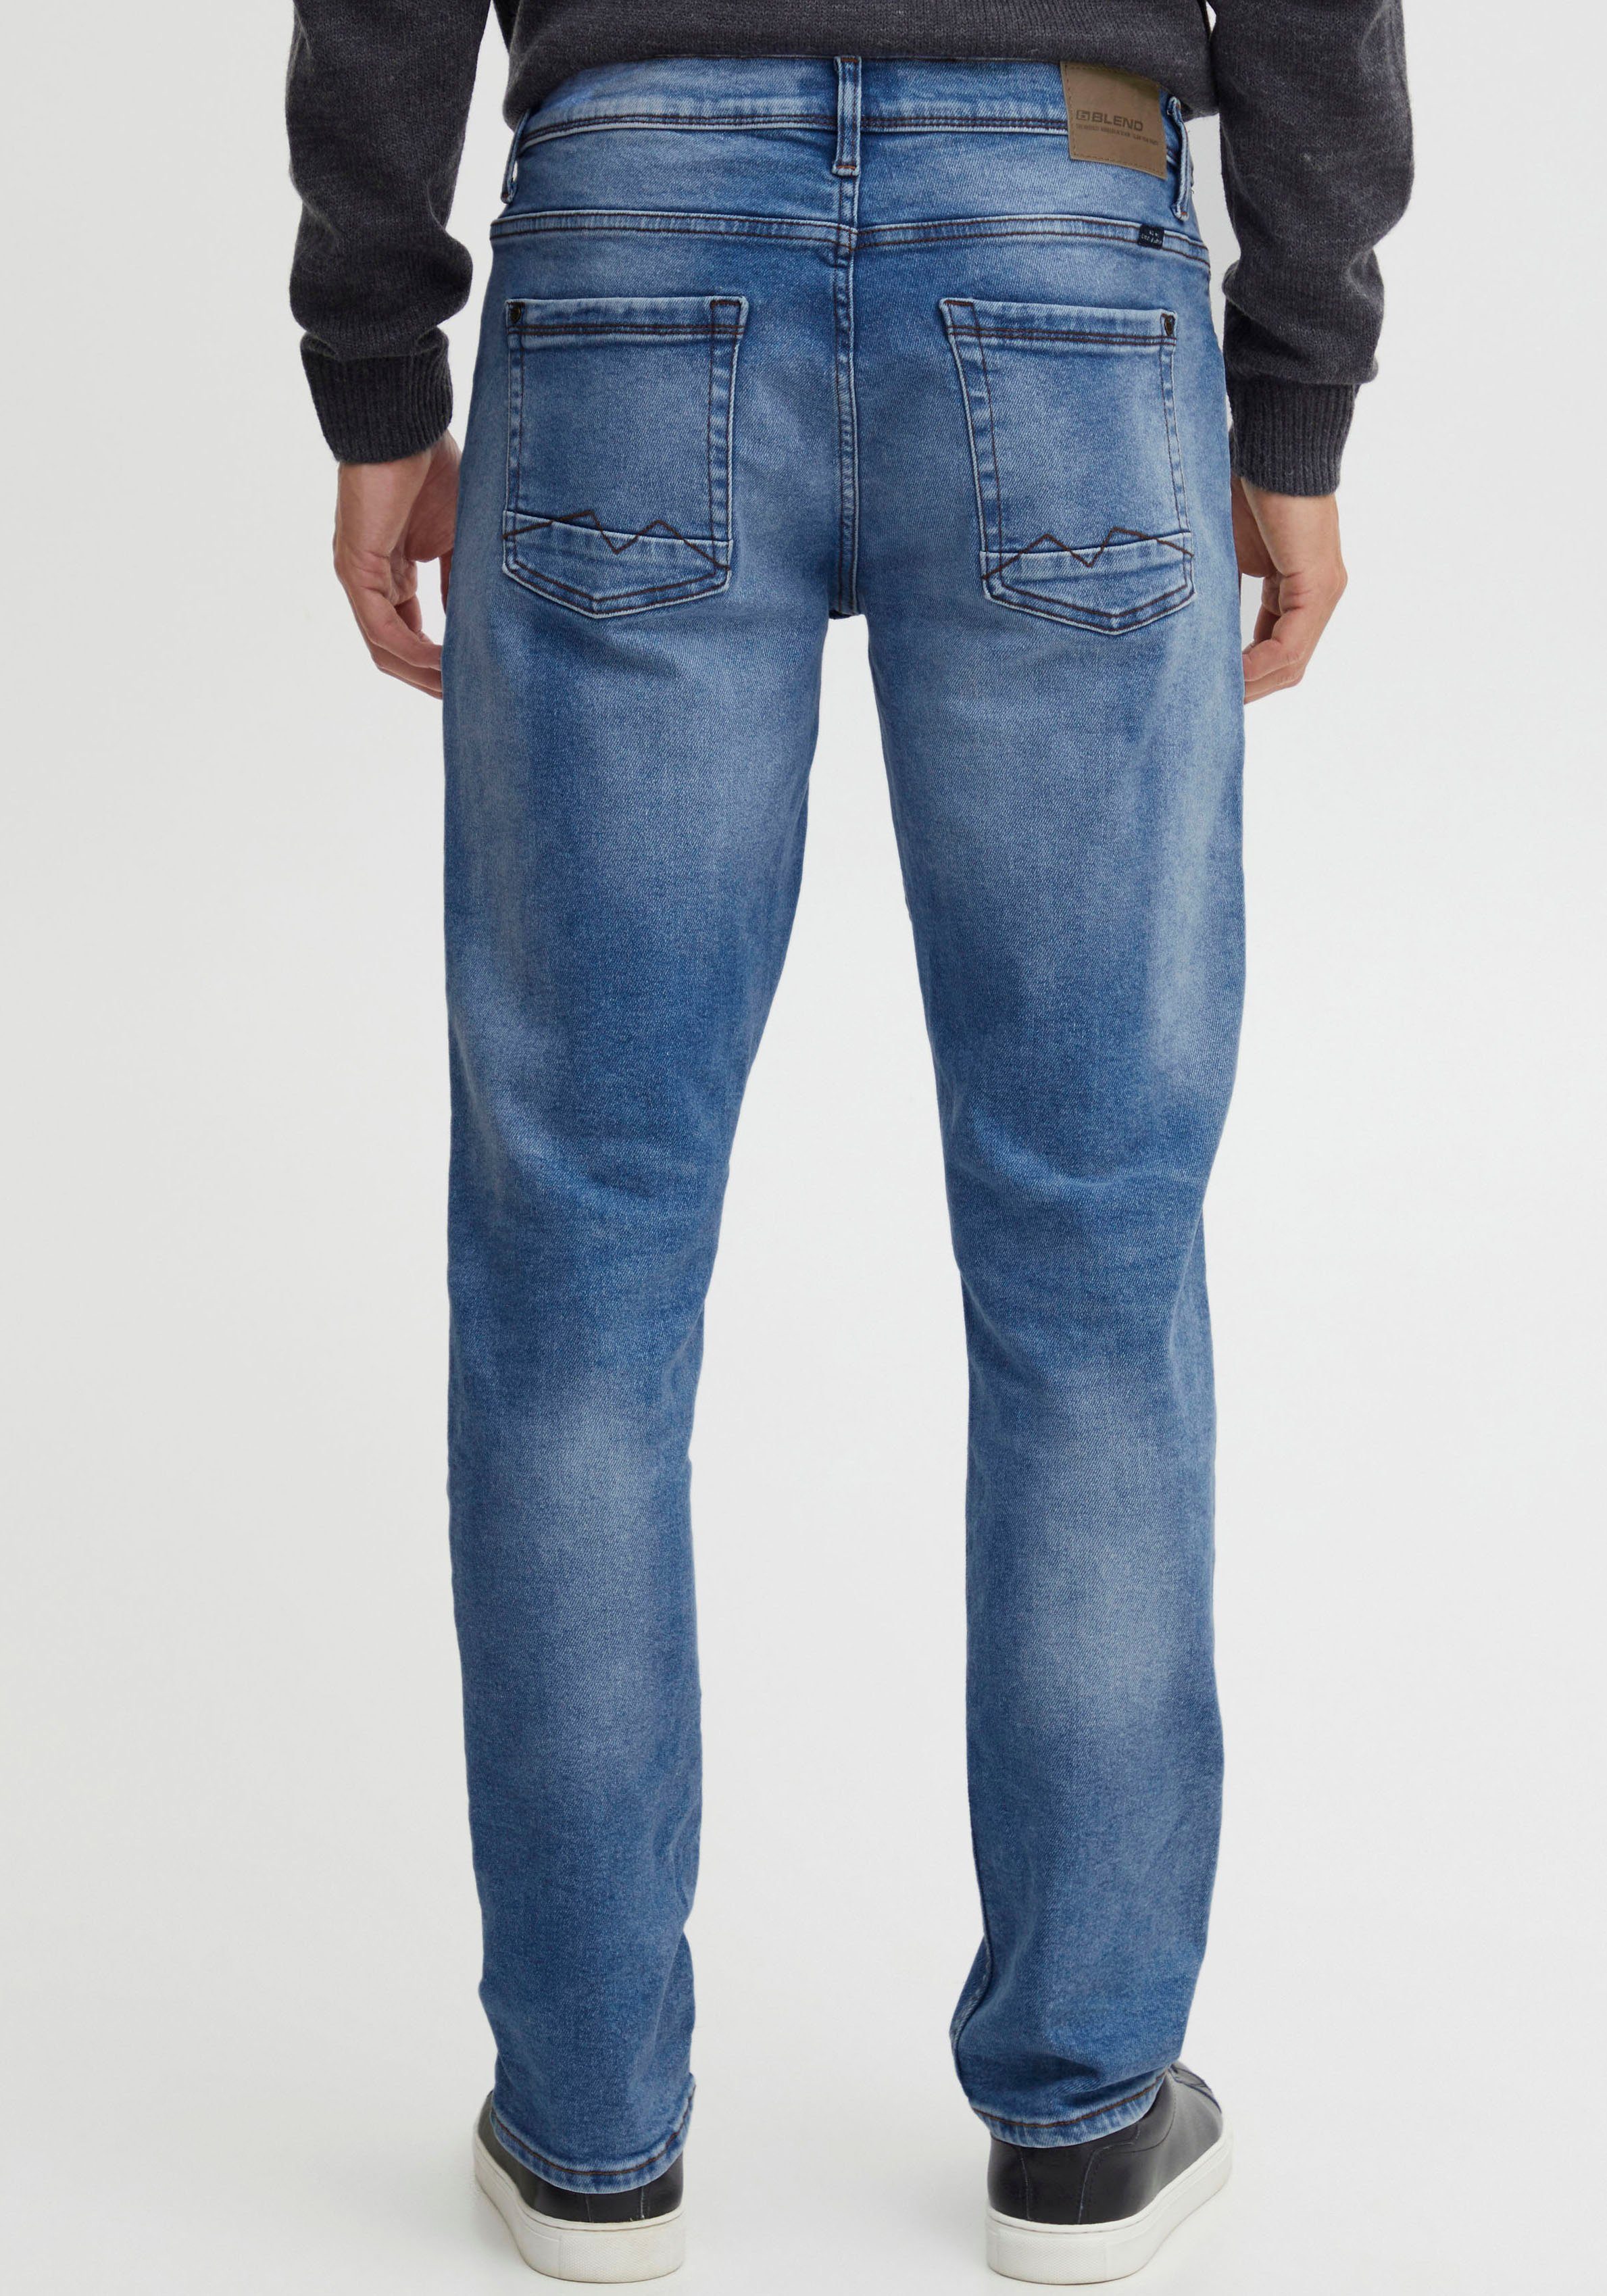 Jeans niedrigere Blizzard Gerades Leibhöhe Blend 5-Pocket-Jeans Bein, BL Multiflex,